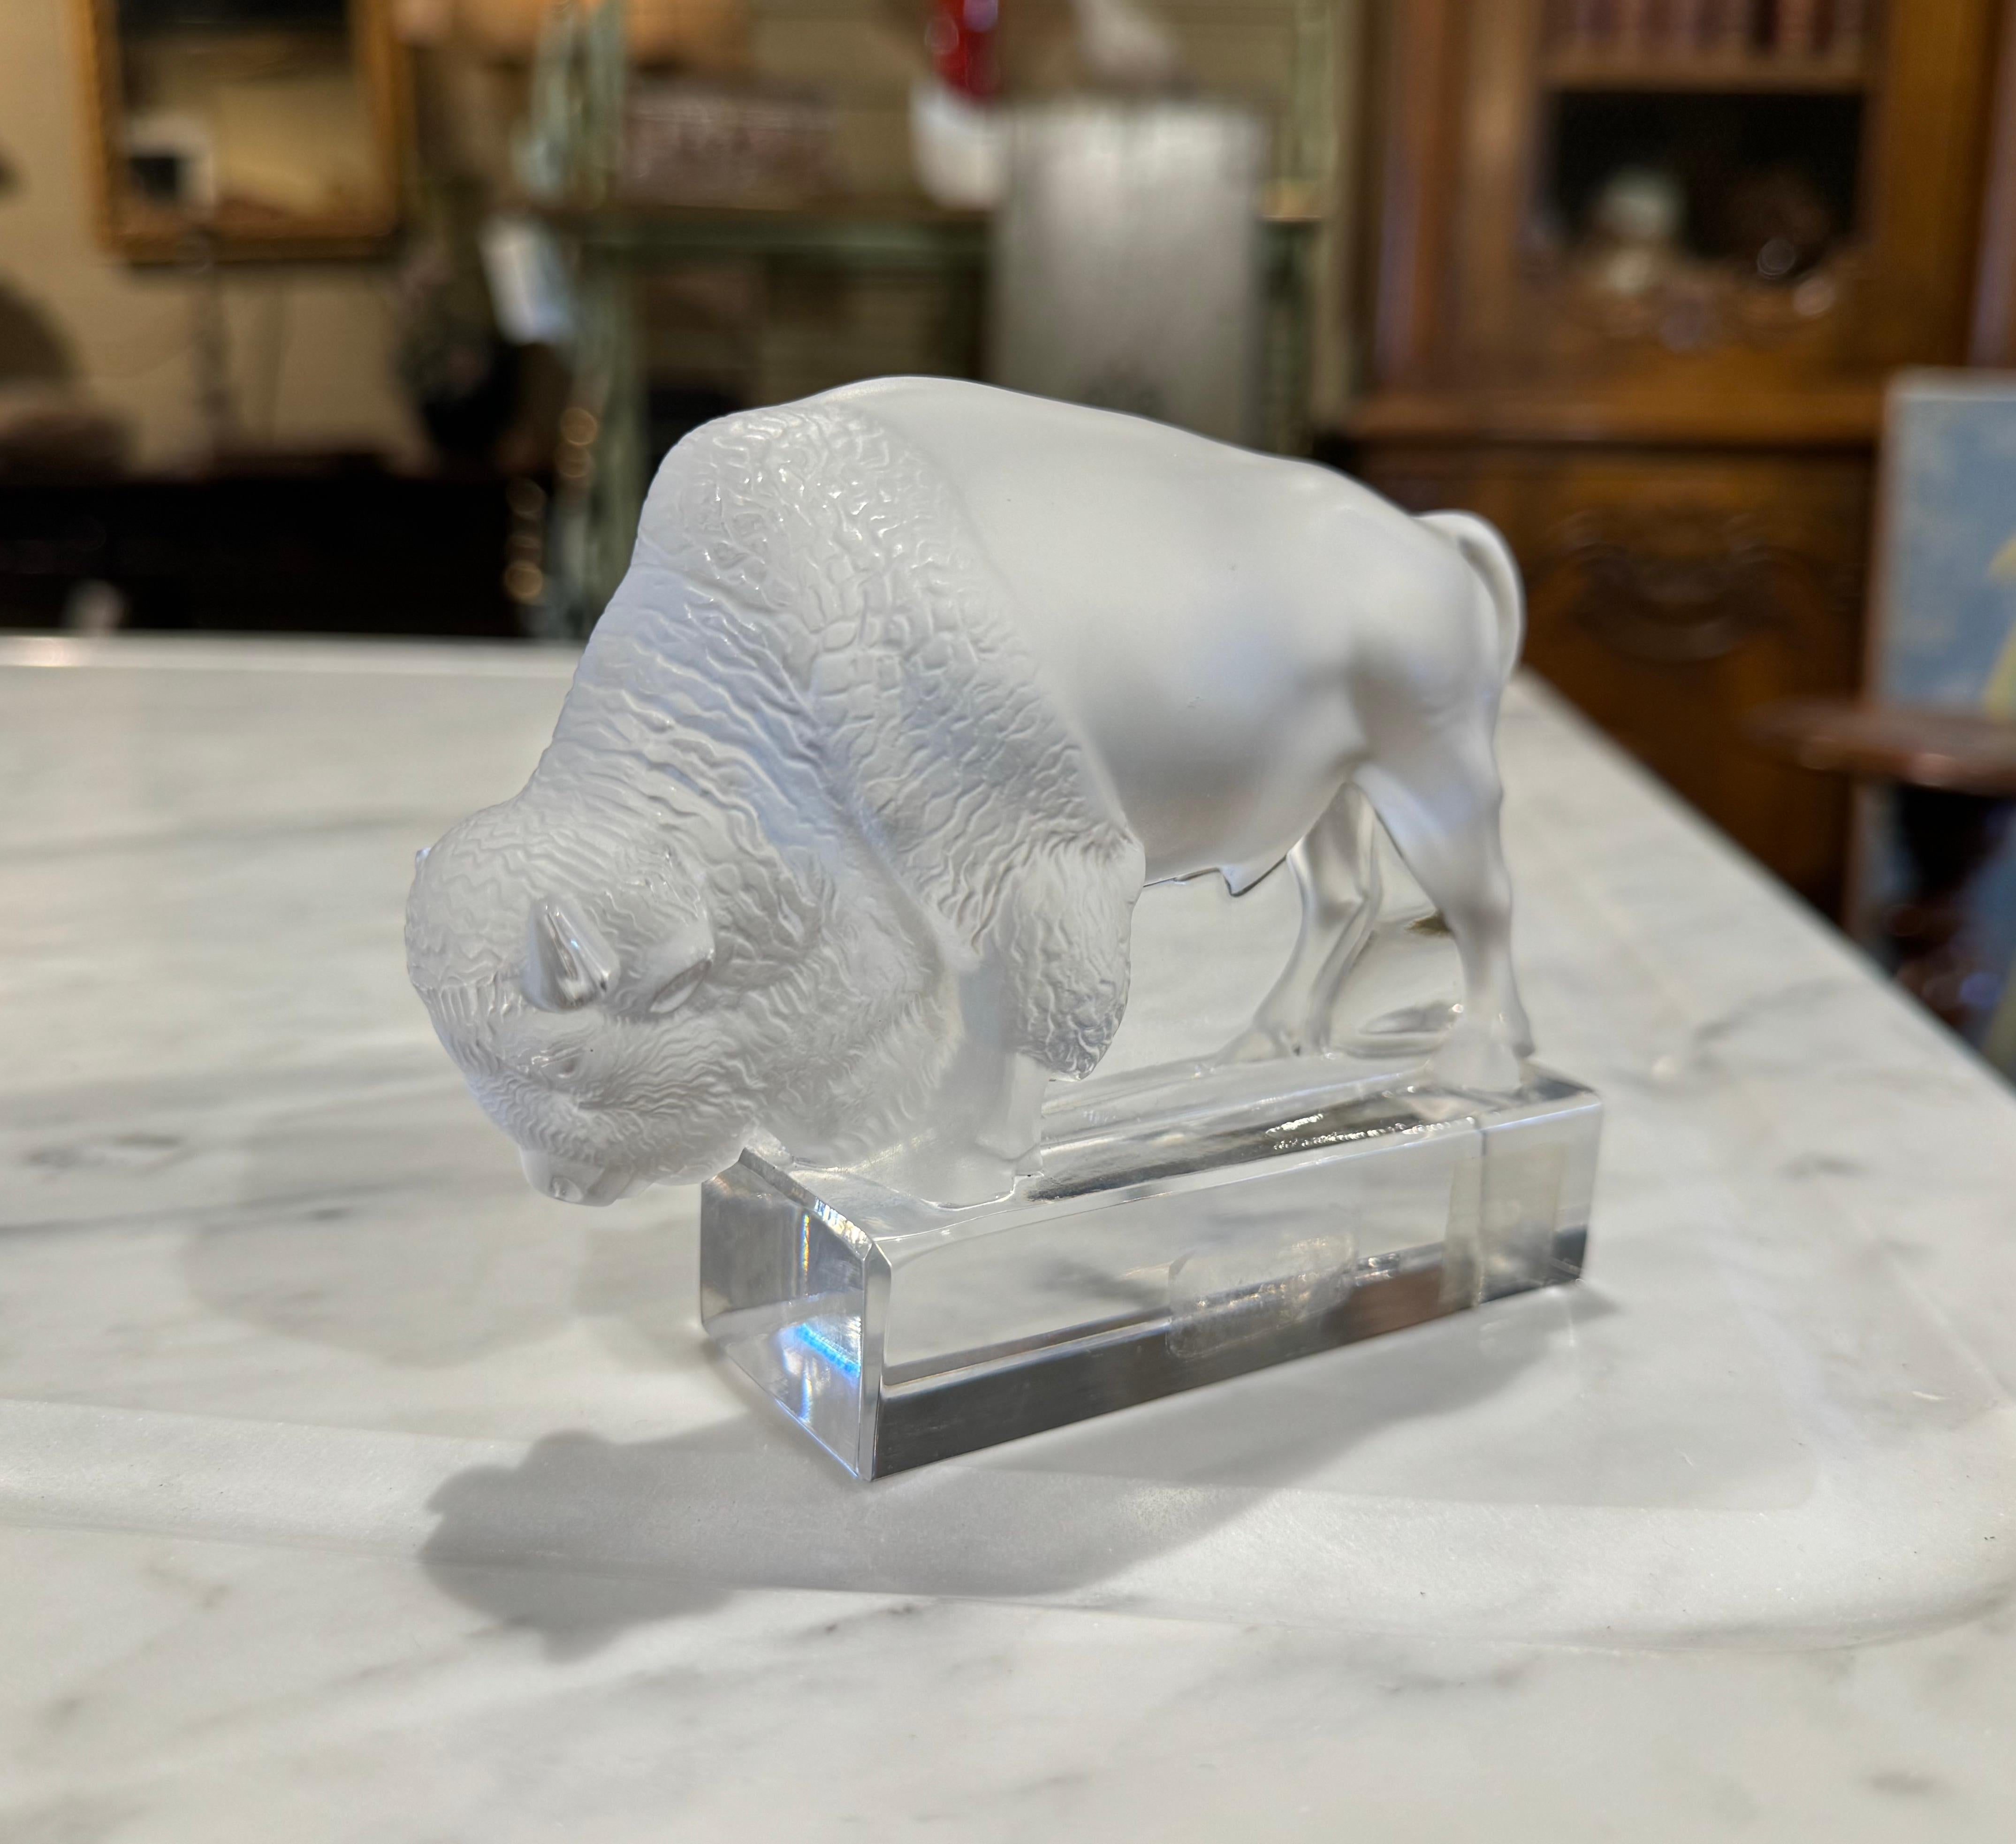 Décorez une étagère ou un bureau avec cette sculpture de bison. Créé en France par Lalique vers 1970, l'oiseau en cristal givré est signé sur la base. La sculpture bovine en presse-papier est en excellent état et présente de riches couleurs.